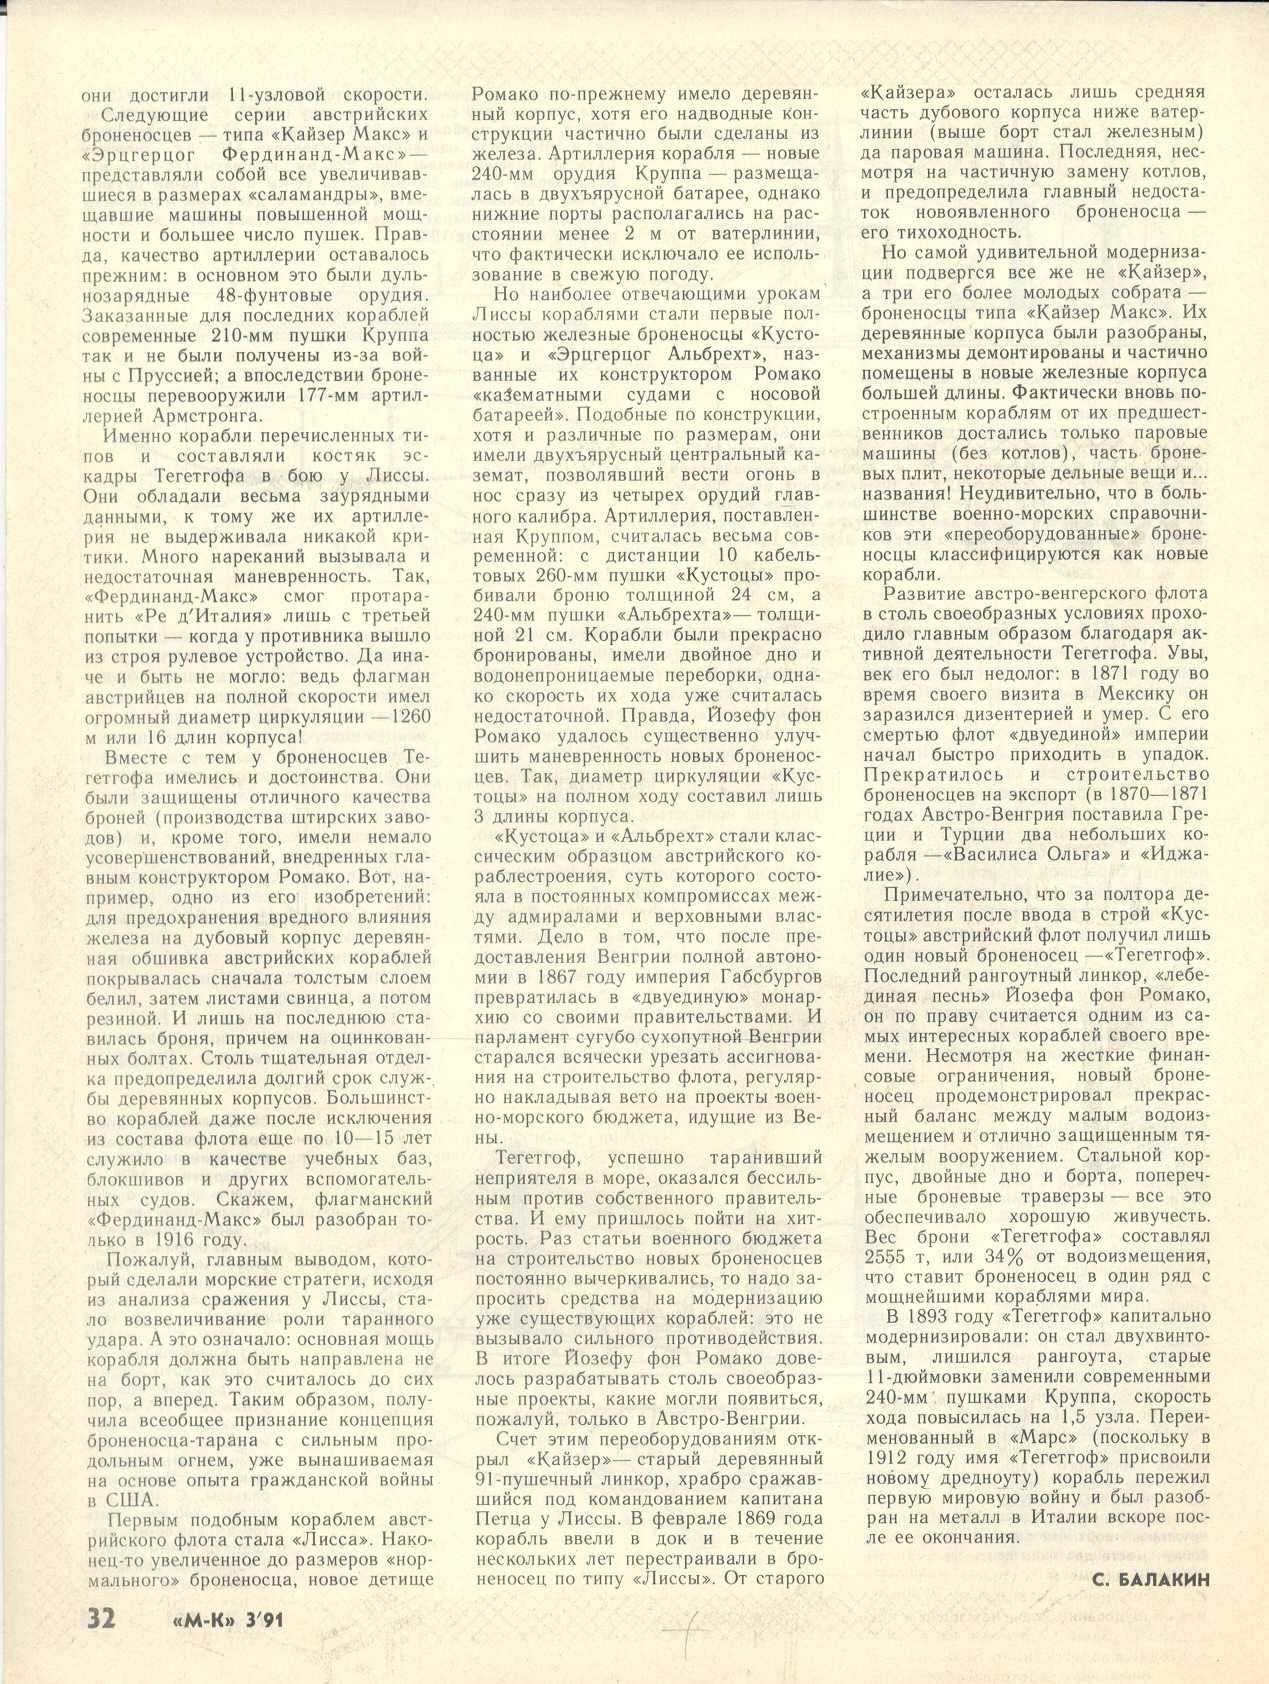 МК 3, 1991, 32 c.